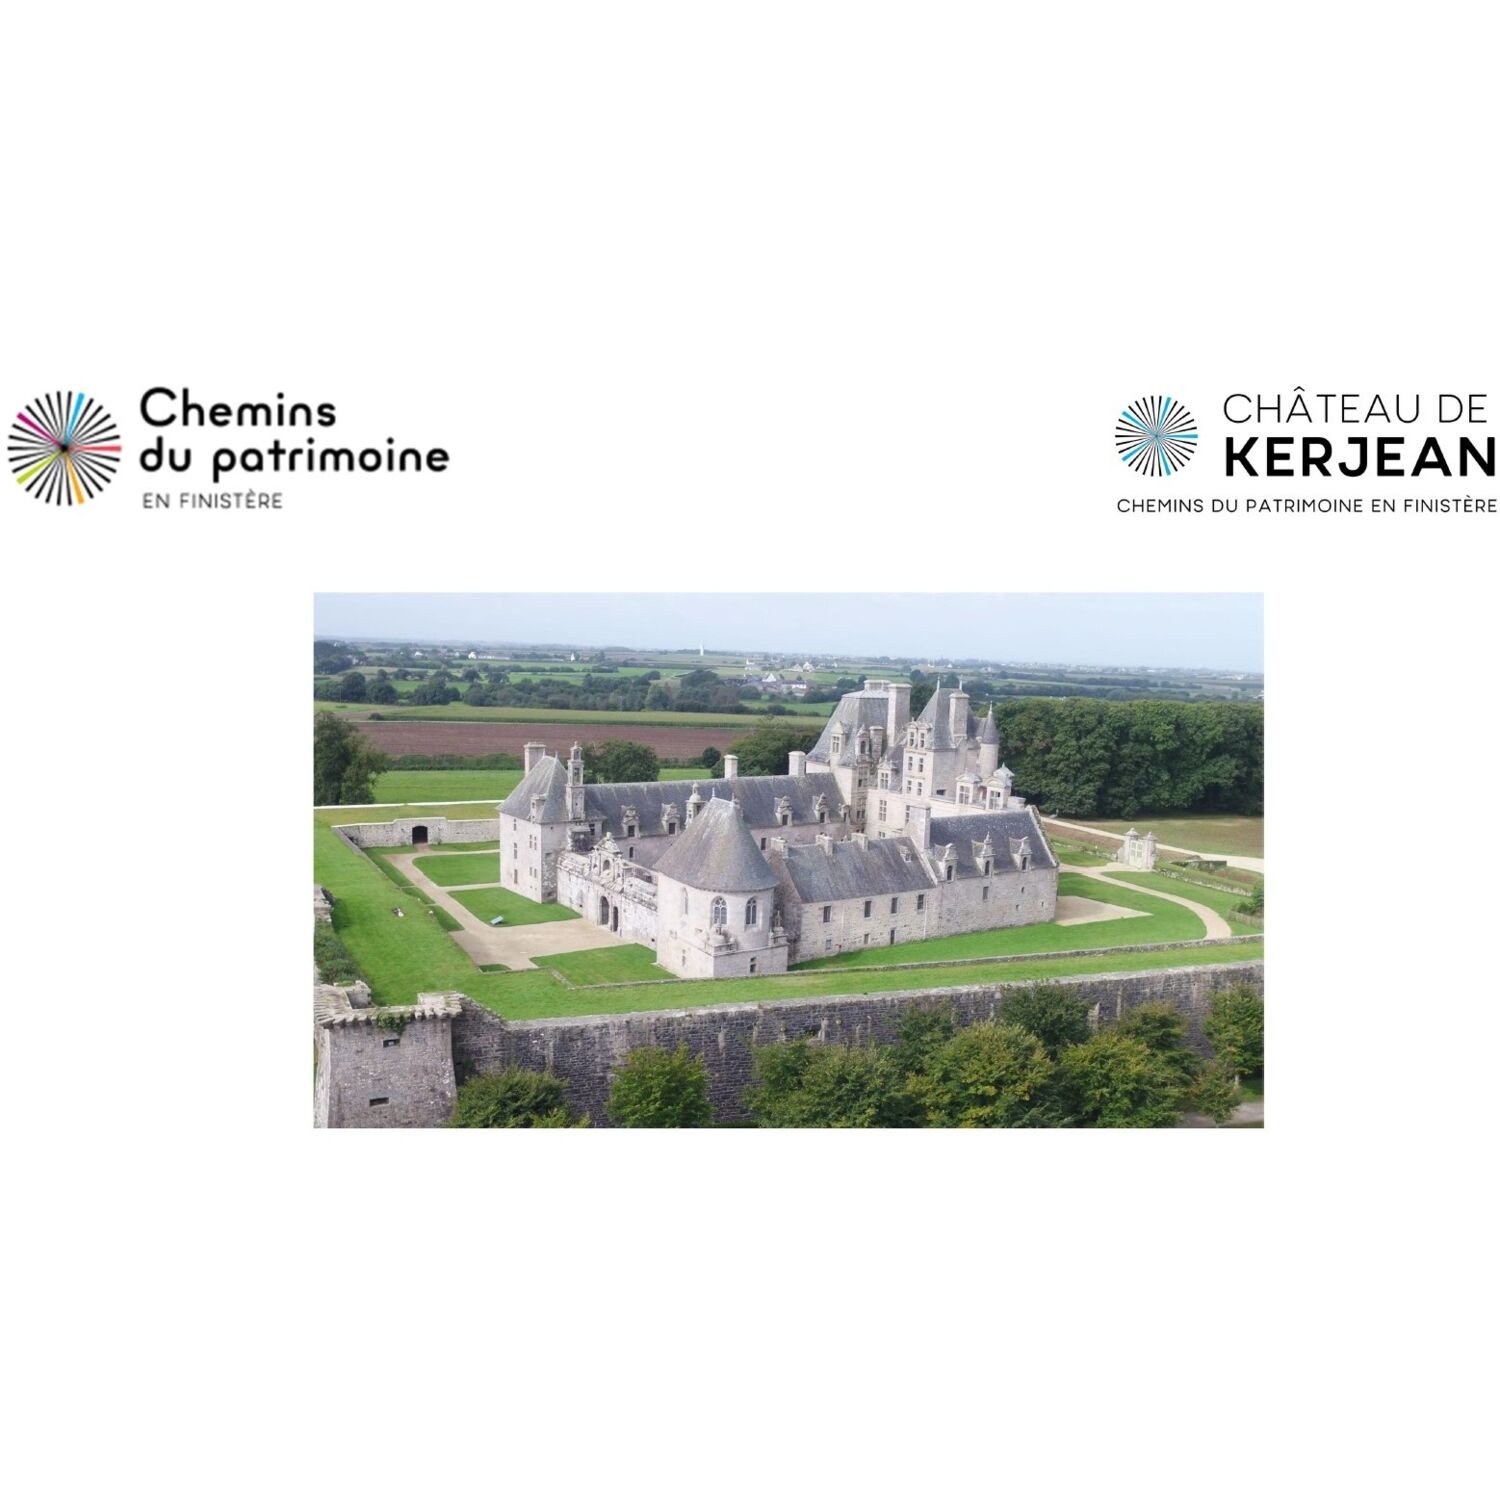 Le Château de Kerjean (29) recrute pour sa réouverture